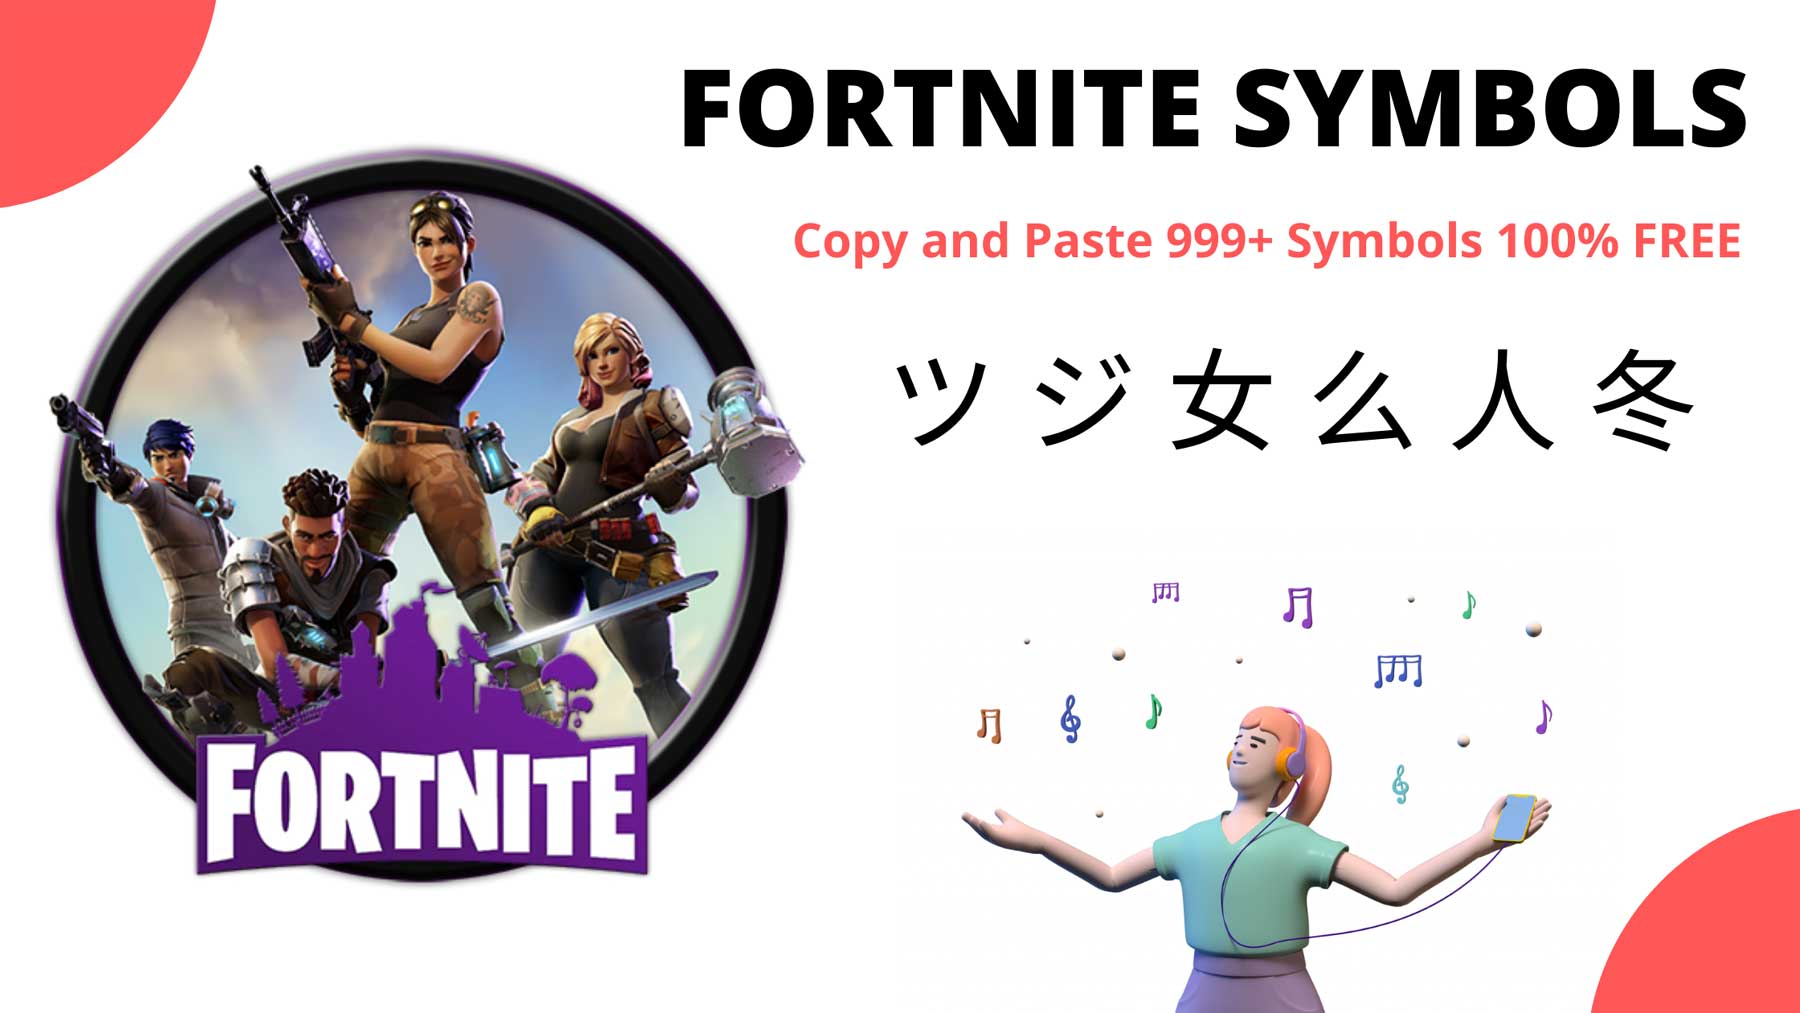 Fortnite Symbols Images